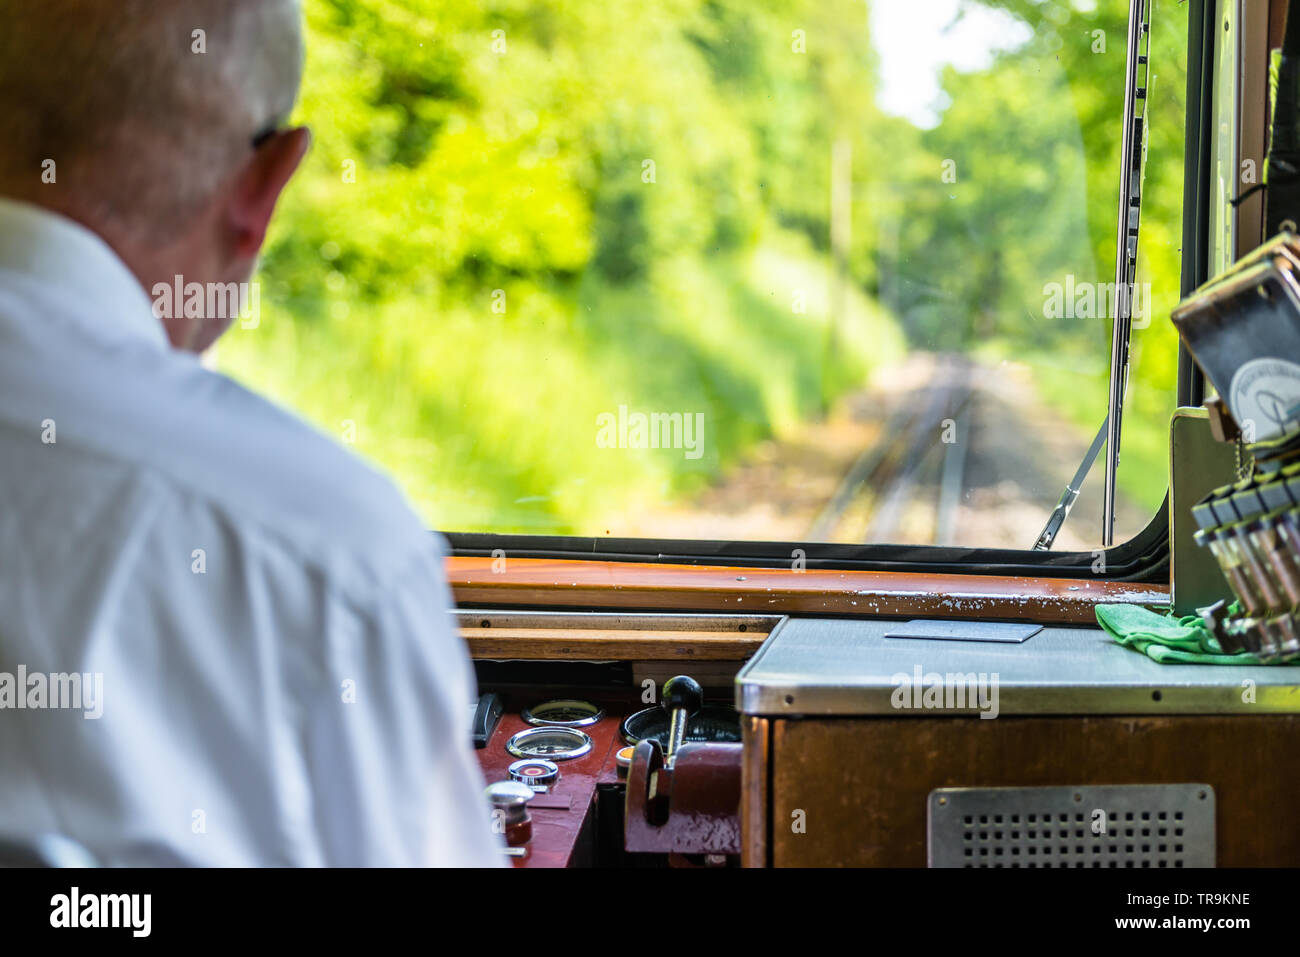 Une vue de la fenêtre d'un train de chemin de fer, un moteur visible pilote exécuté un train, planche de bord, des pistes, des arbres et un ciel bleu avec blanc clou Banque D'Images